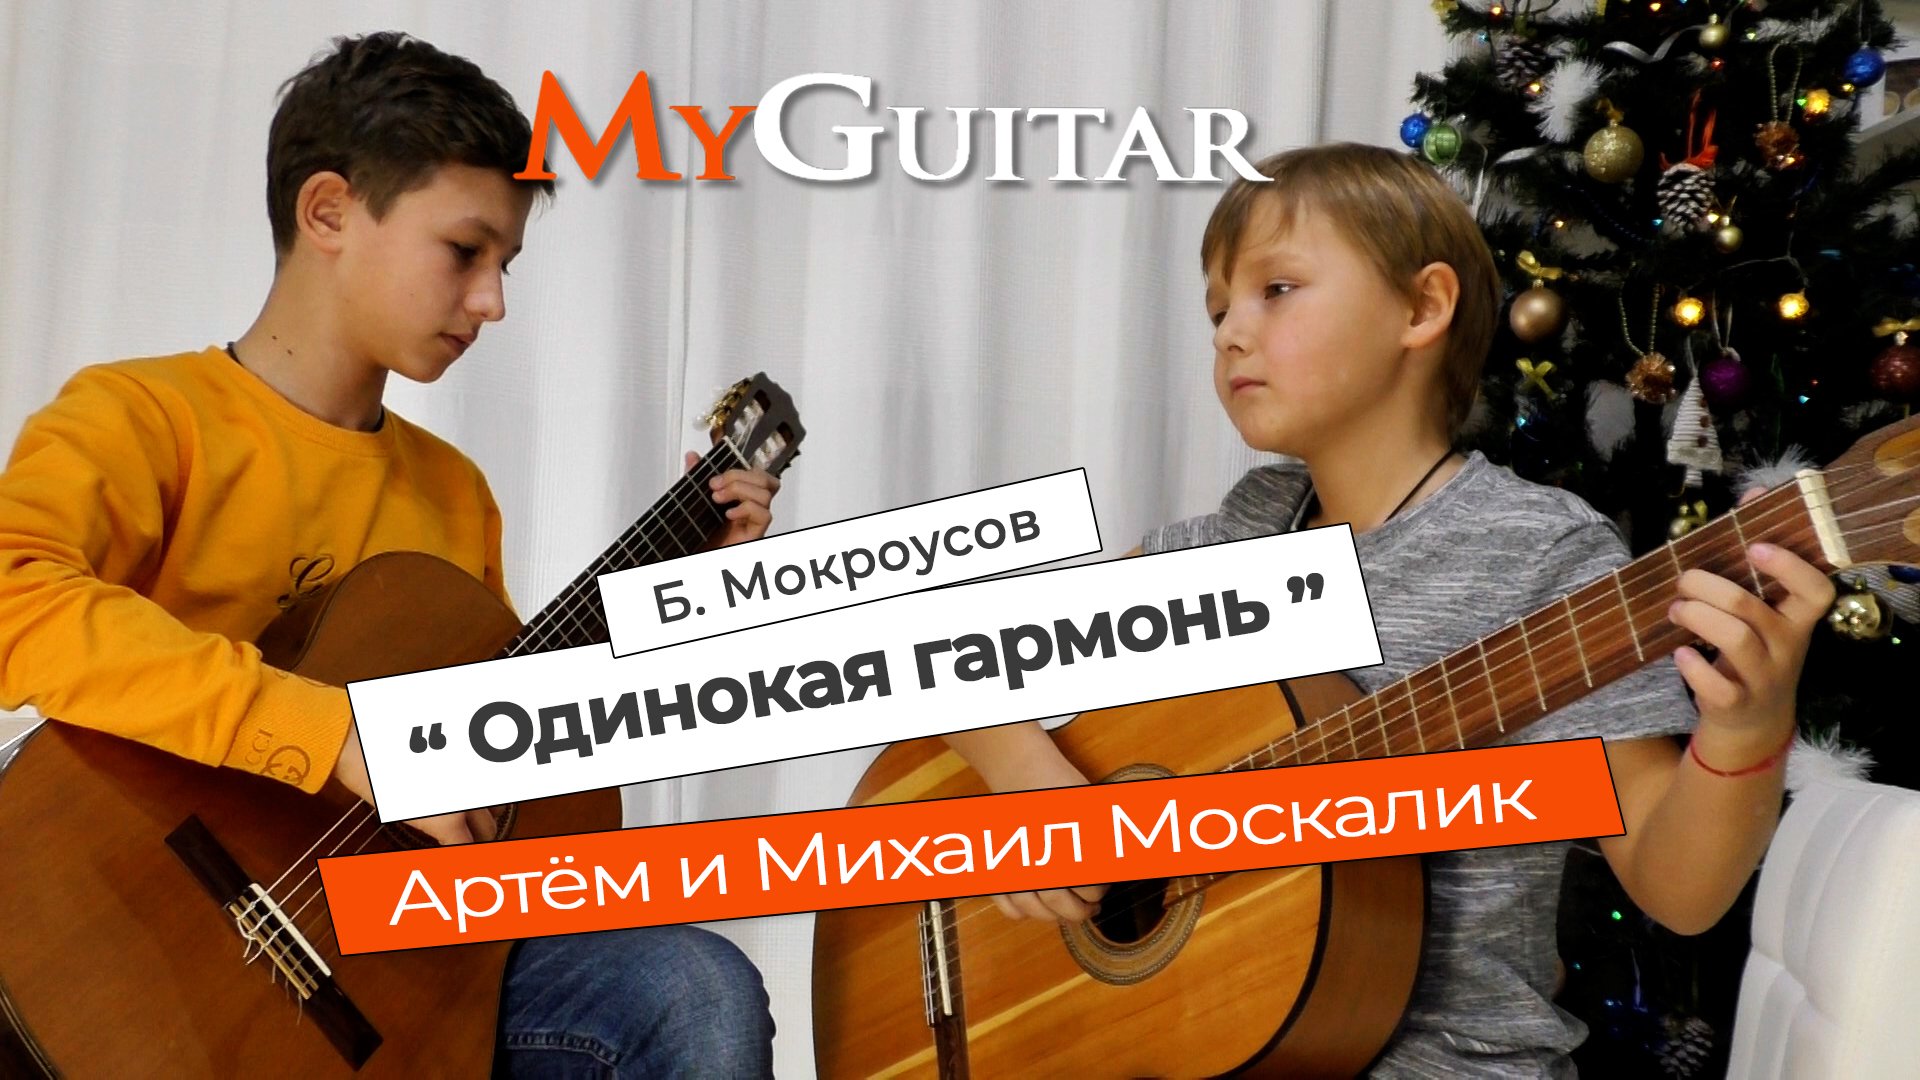 "Одинокая гармонь", Б. Мокроусов. Исполняют Михаил и Артём Москалик. (8 и 12 лет)